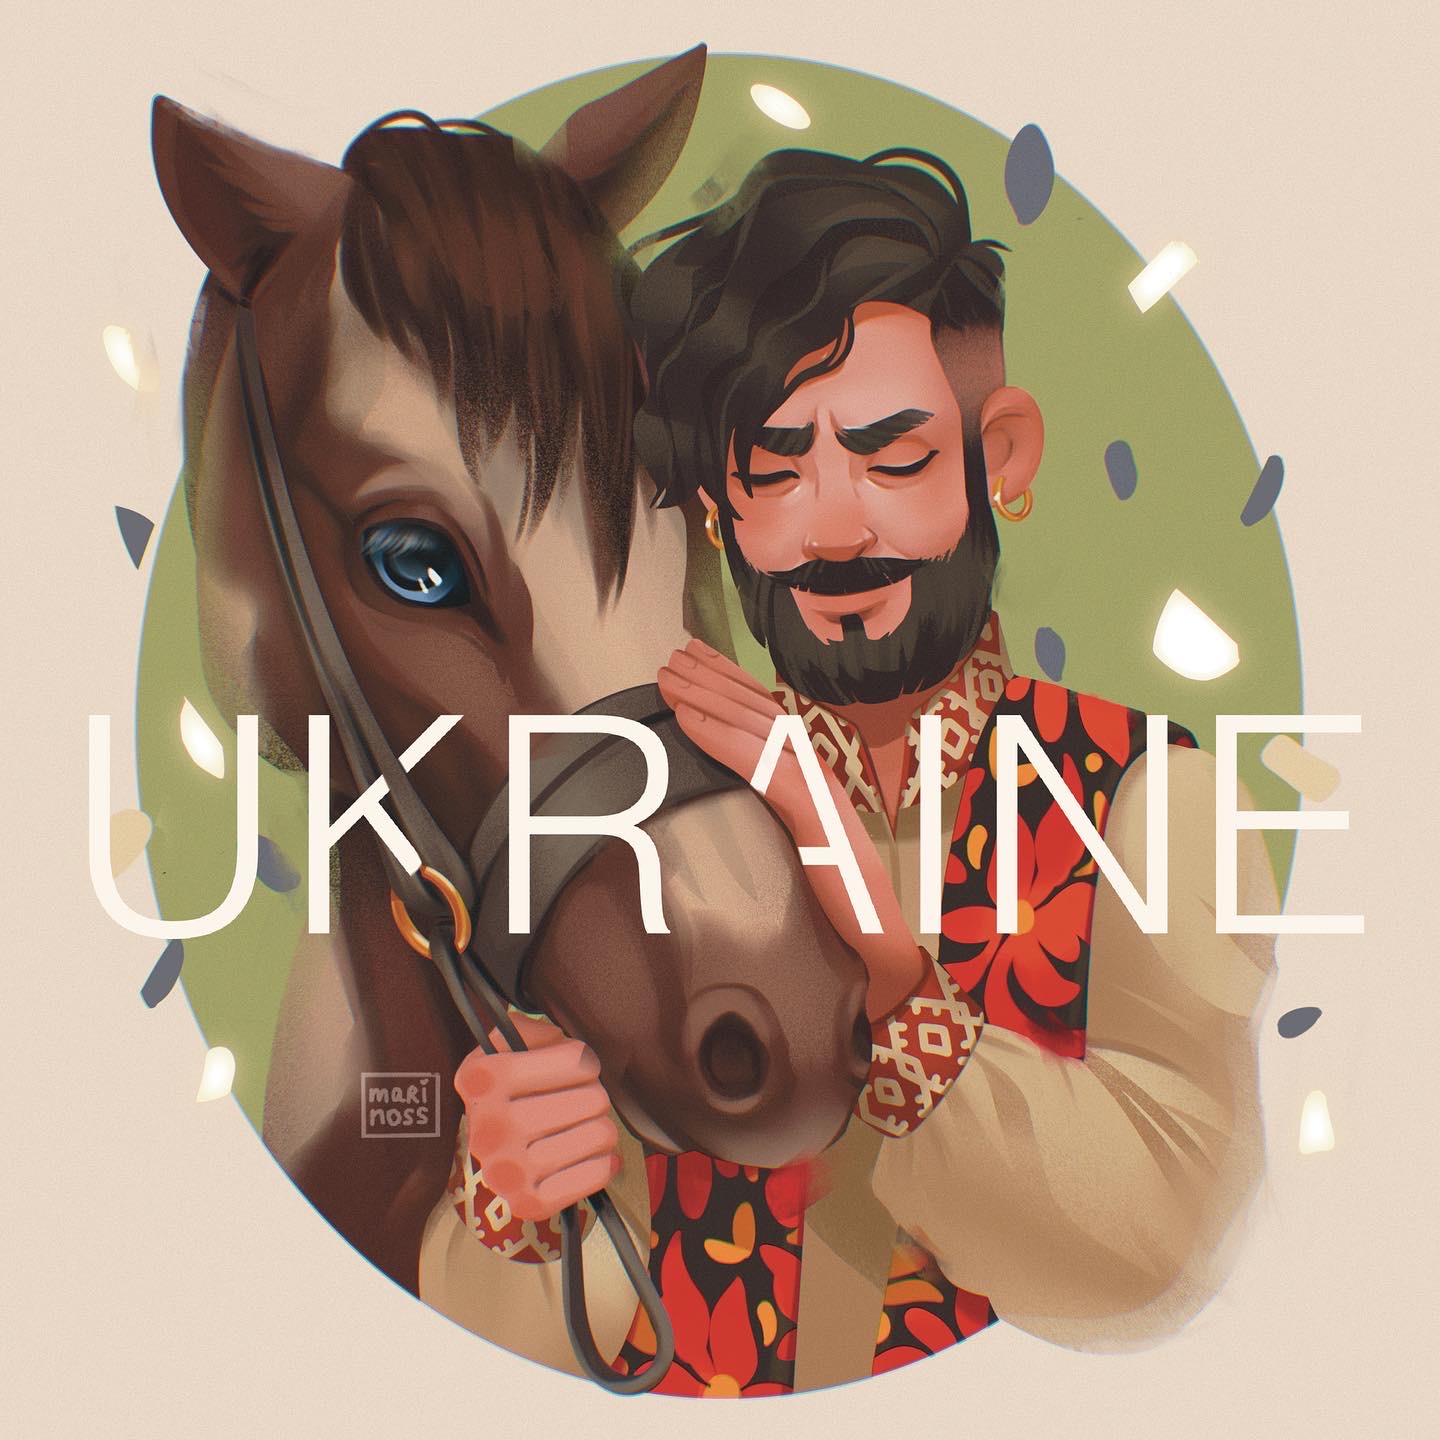 ukrainian manin